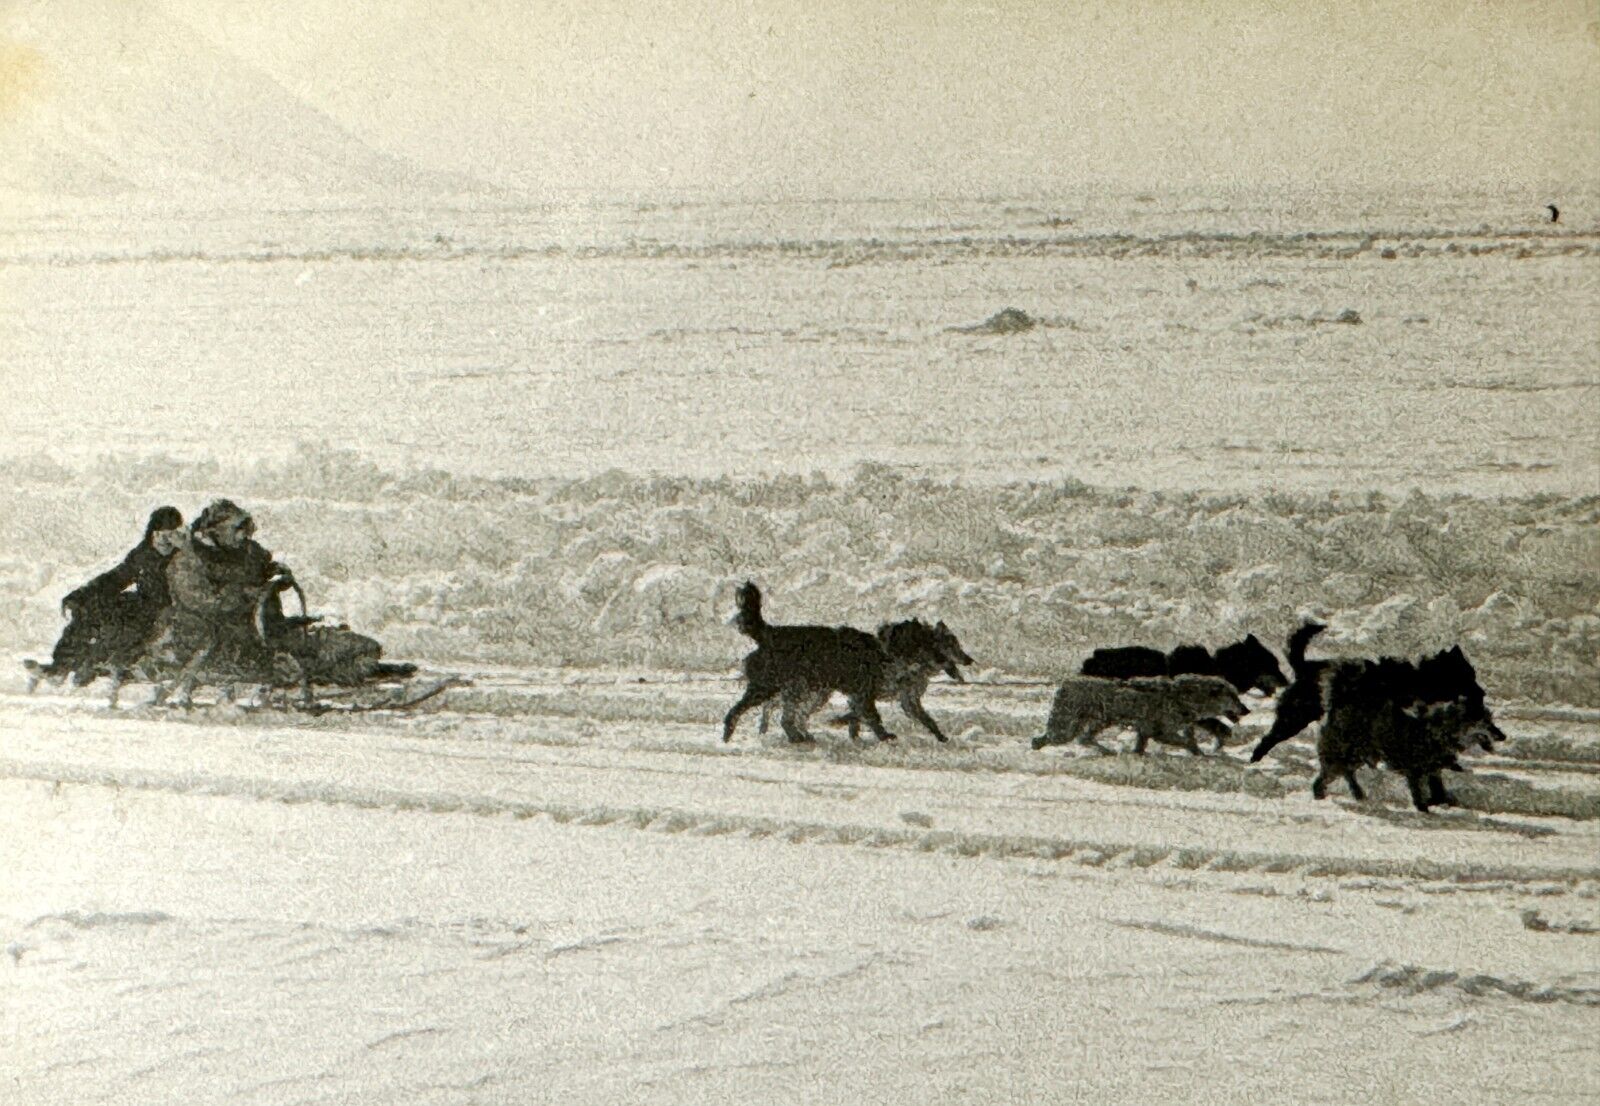 1950s Far North USSR Chukotka Dog Sledding Vintage Photo B&W Snapshot